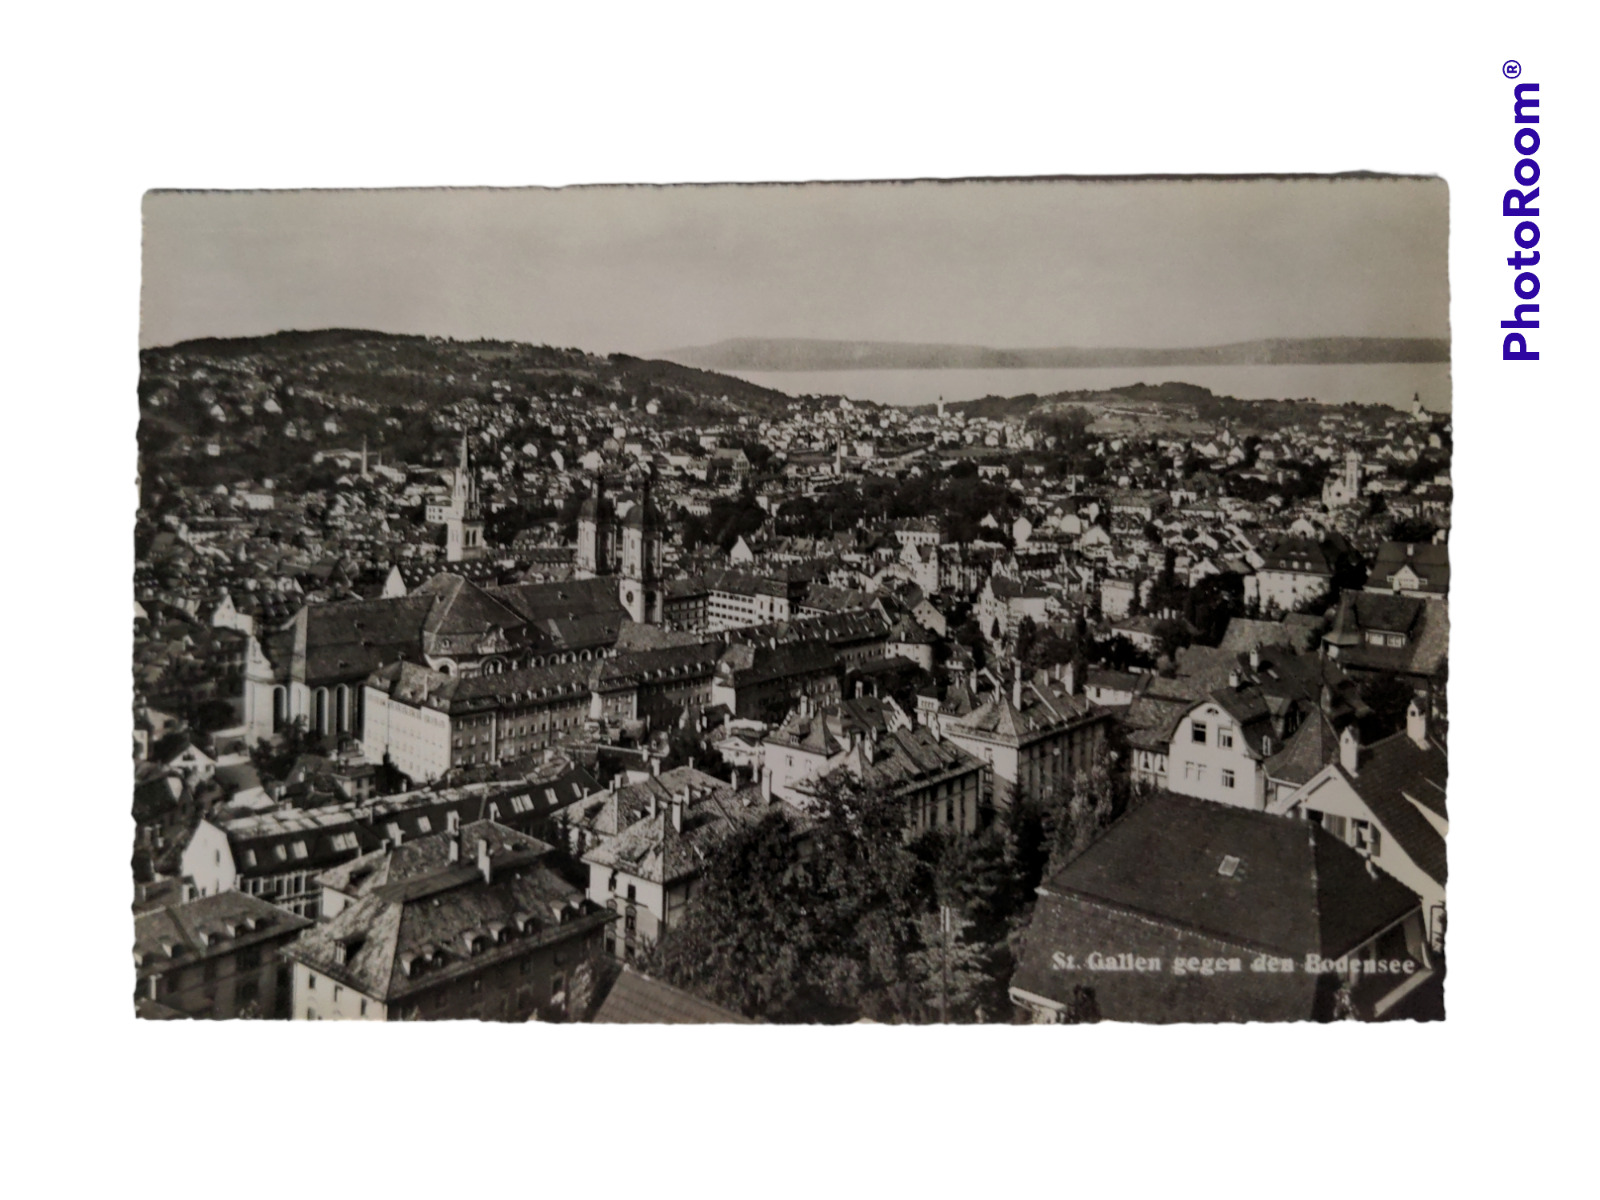 St. Gallen Bodensee Switzerland Antique Real Photo RPPC Postcard